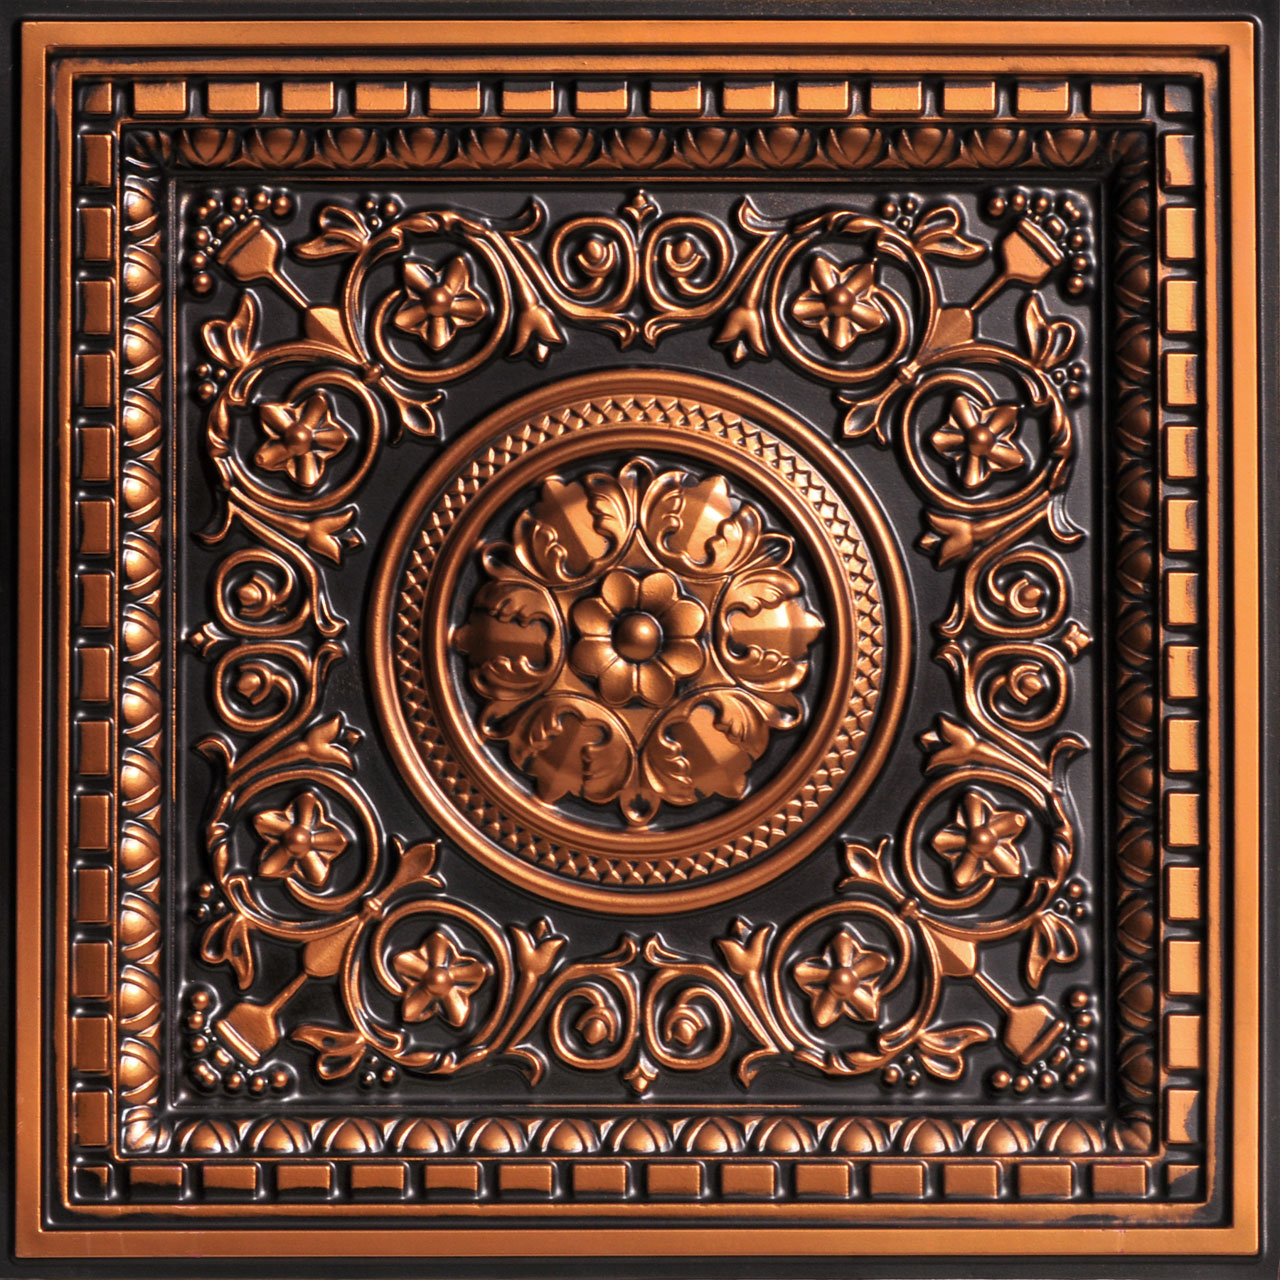 Faux Copper Ceiling Tiles Buy Online Decorative 